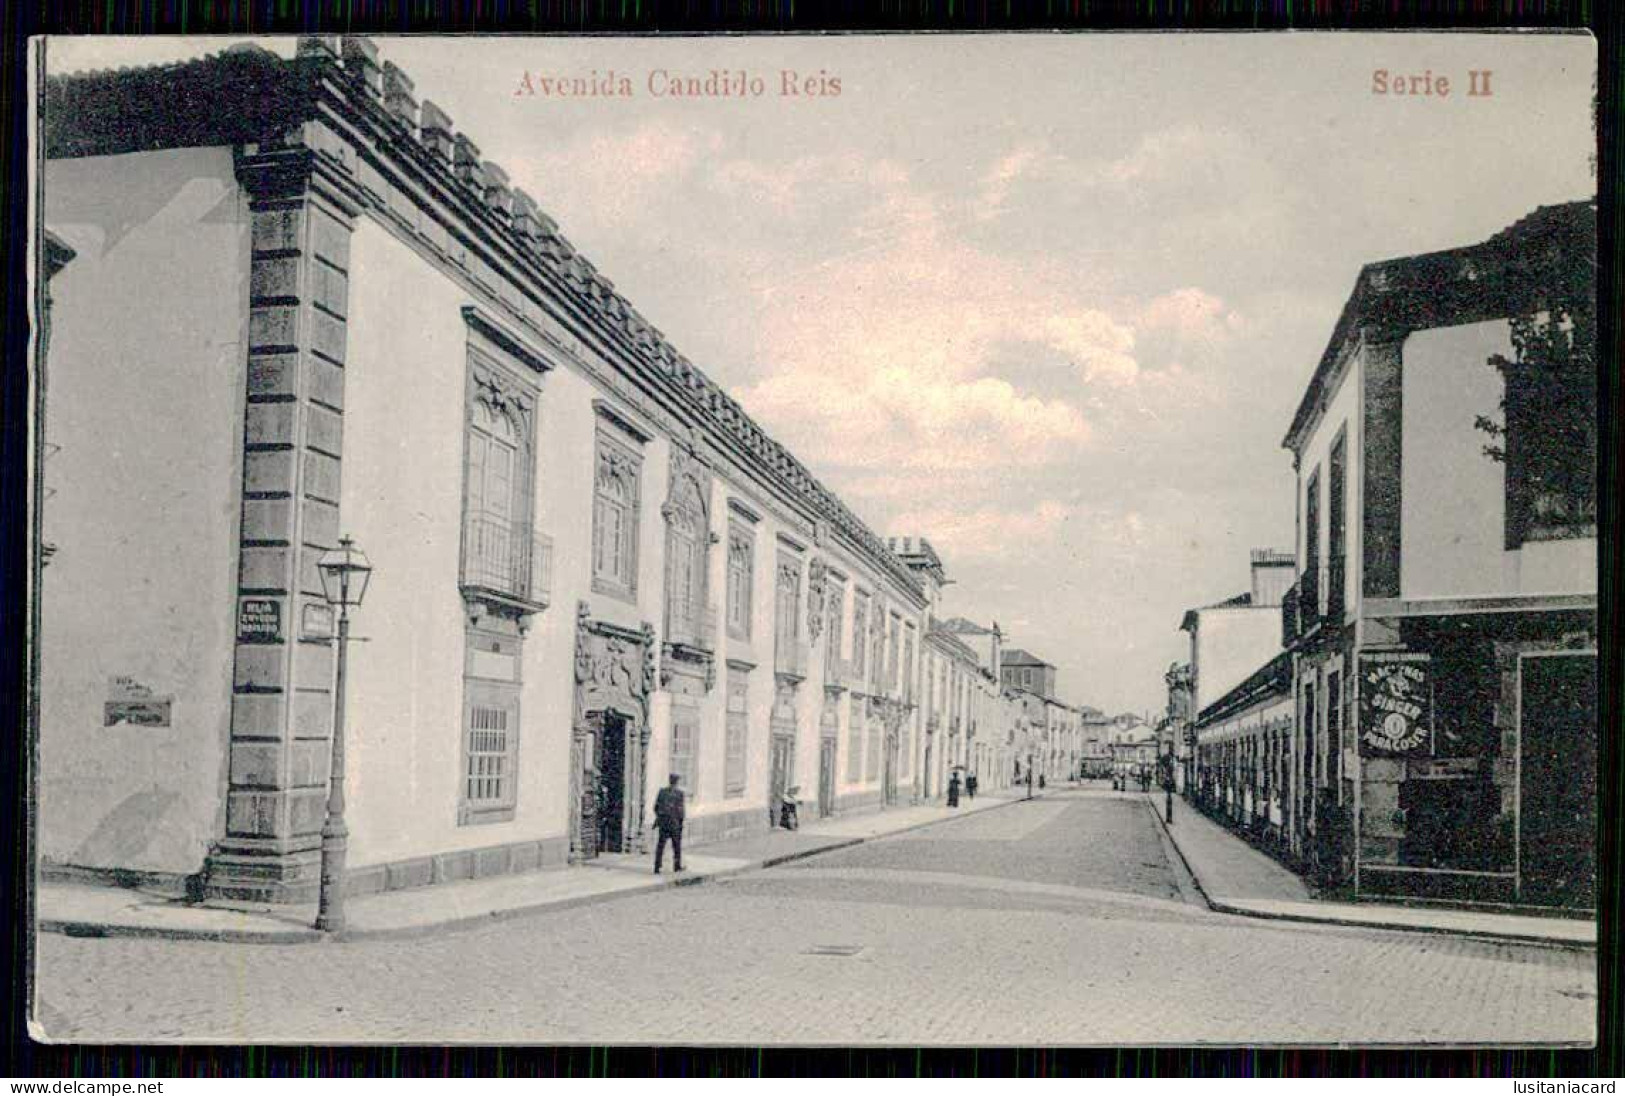 VIANA DO CASTELO - Avenida Candido Reis. (Serie II) Carte Postale - Viana Do Castelo